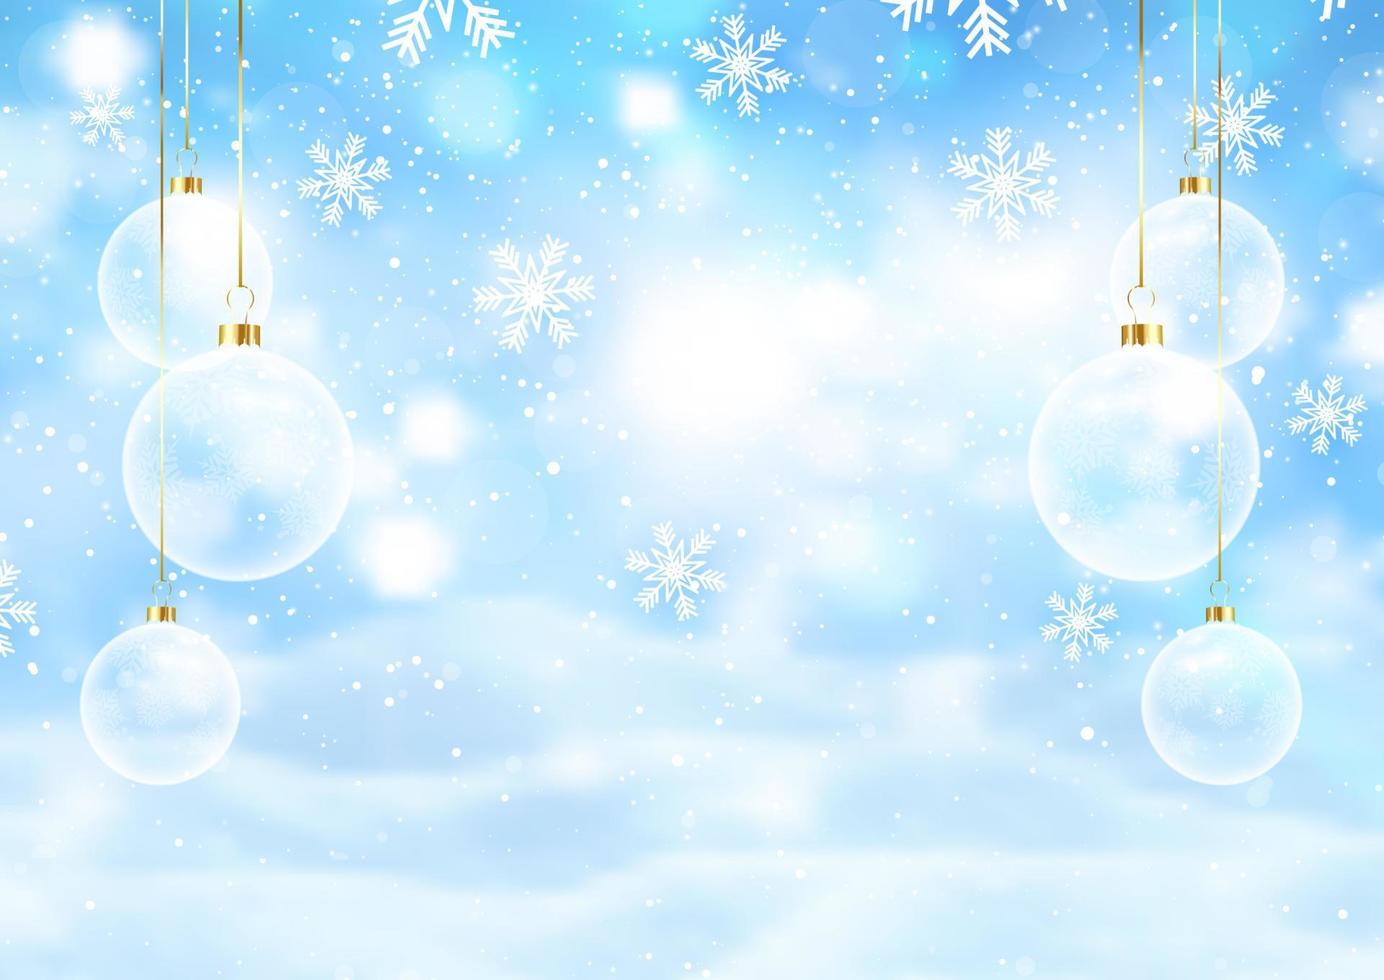 jul bakgrund med hängande grannlåt och snöflingor vektor